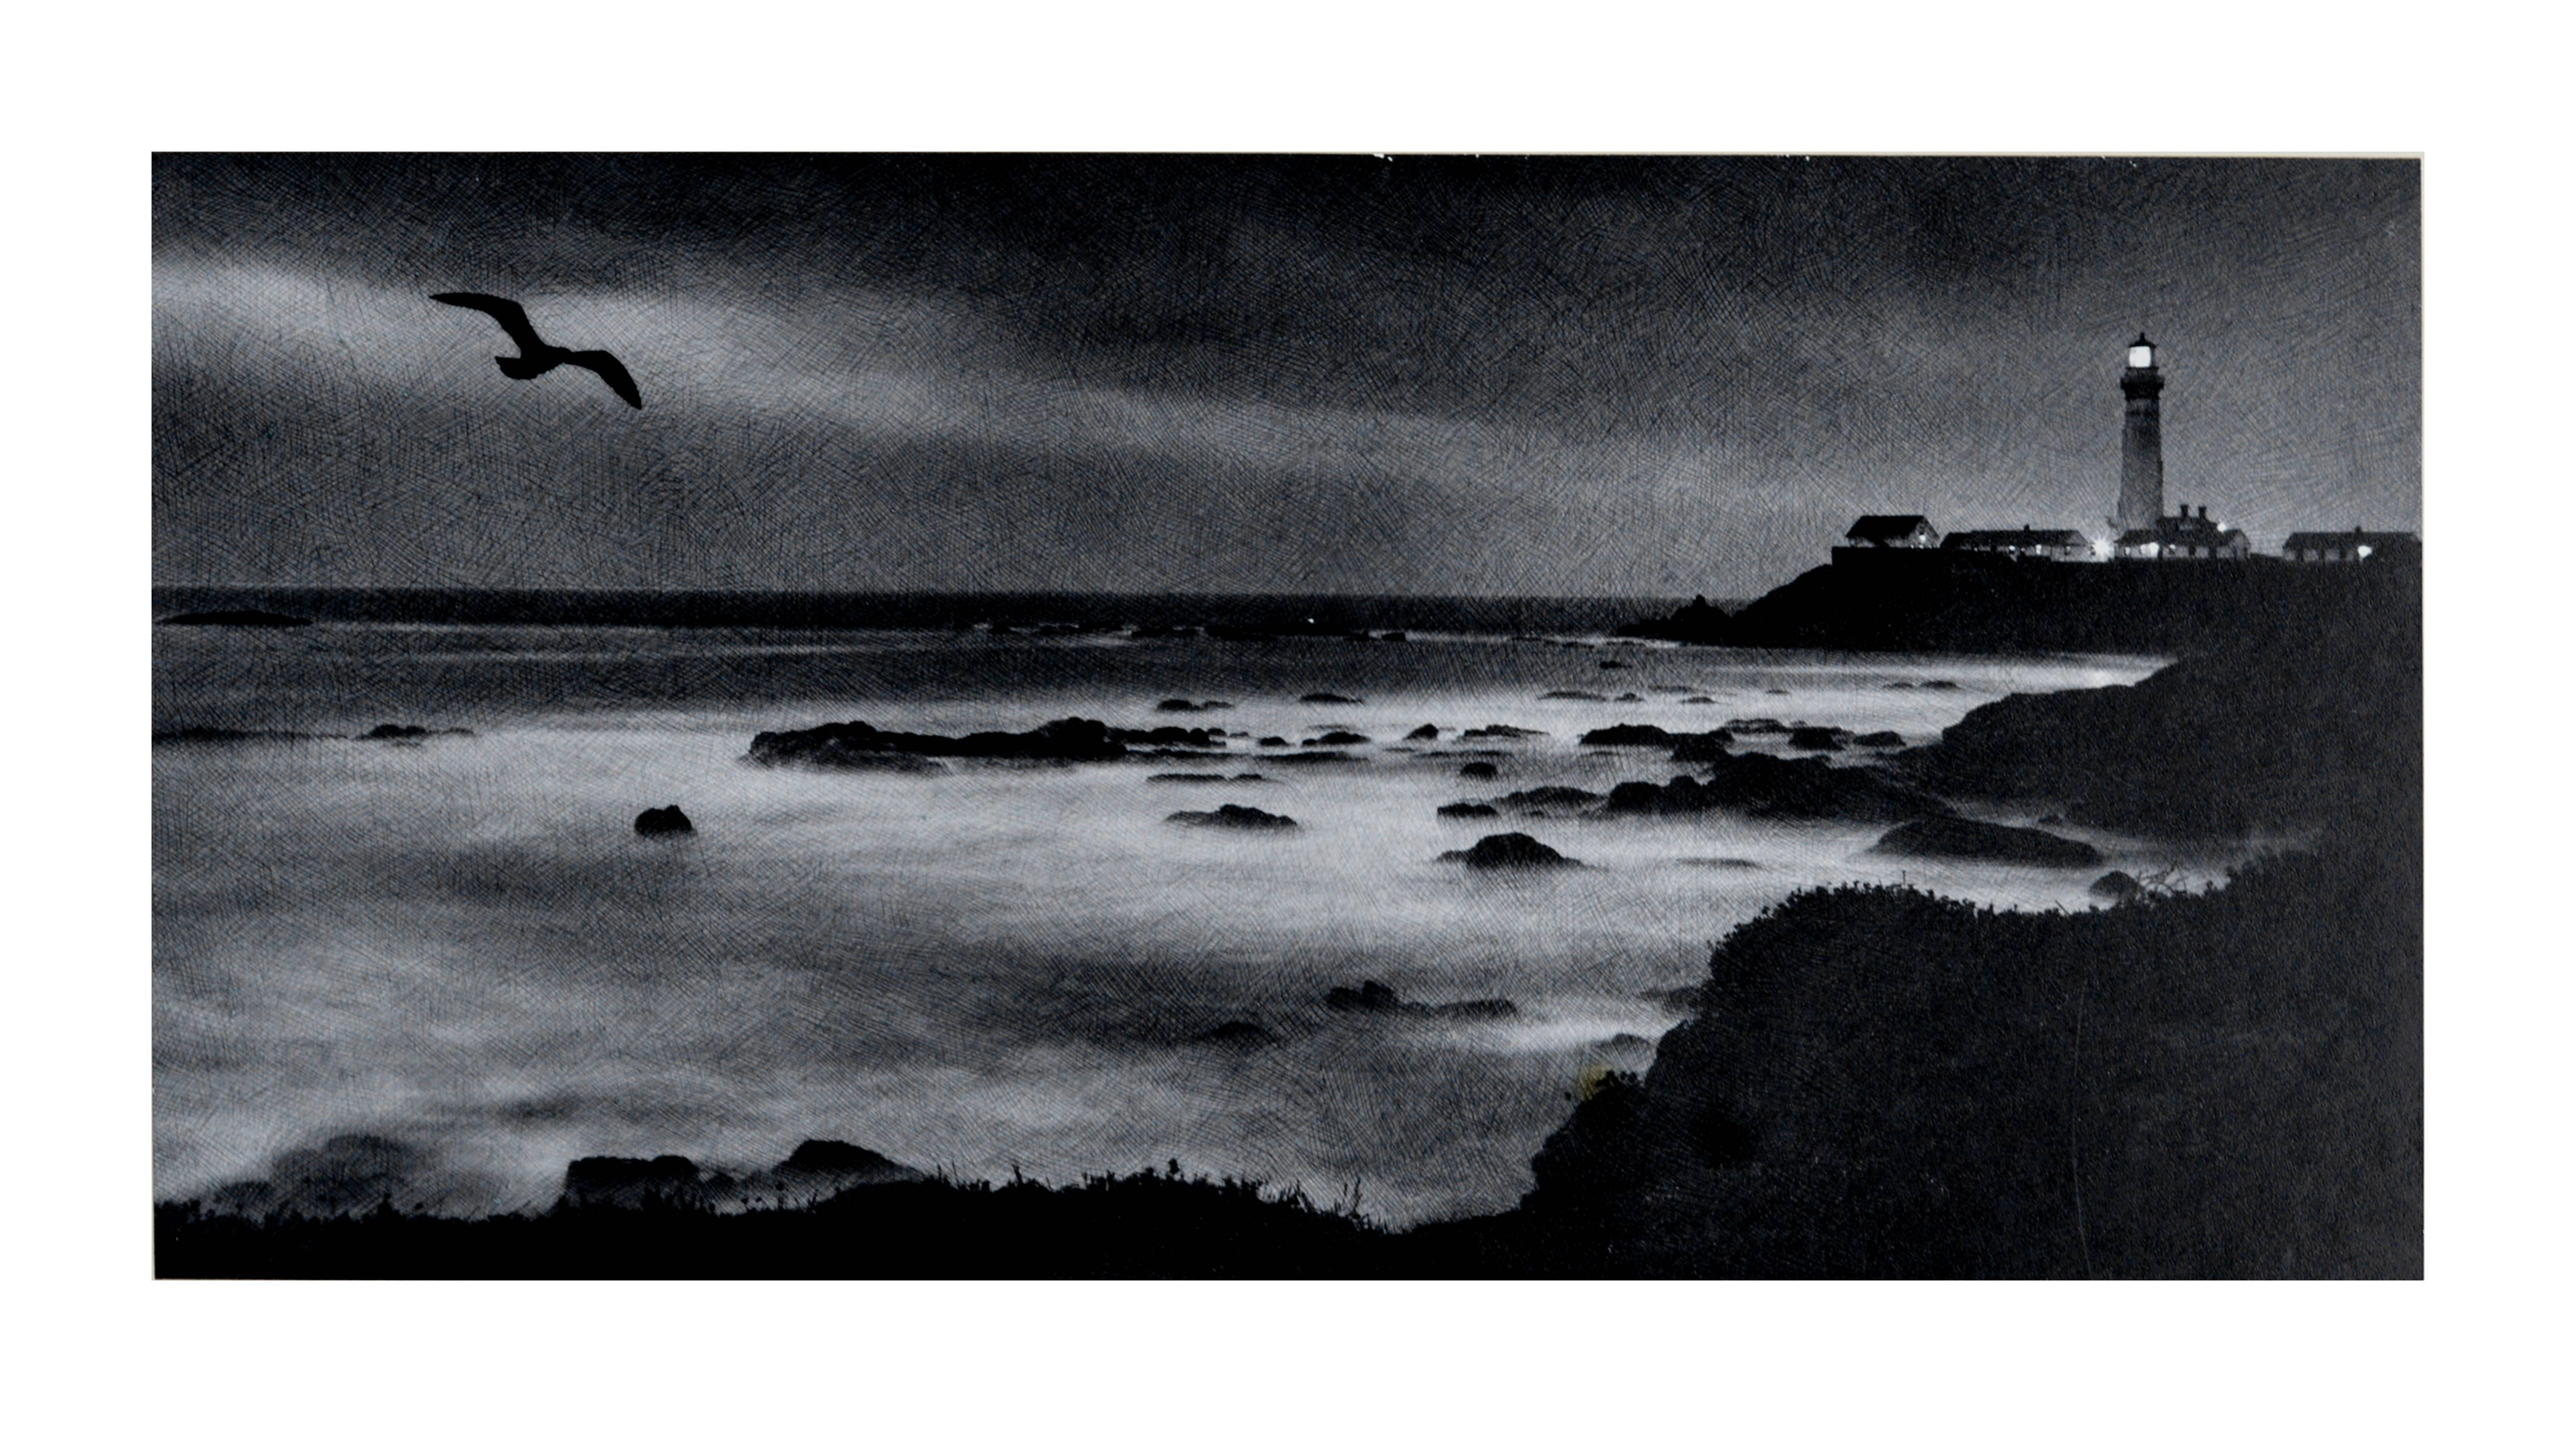 Sailor's Light Seascape - Black & White Landscape Photograph